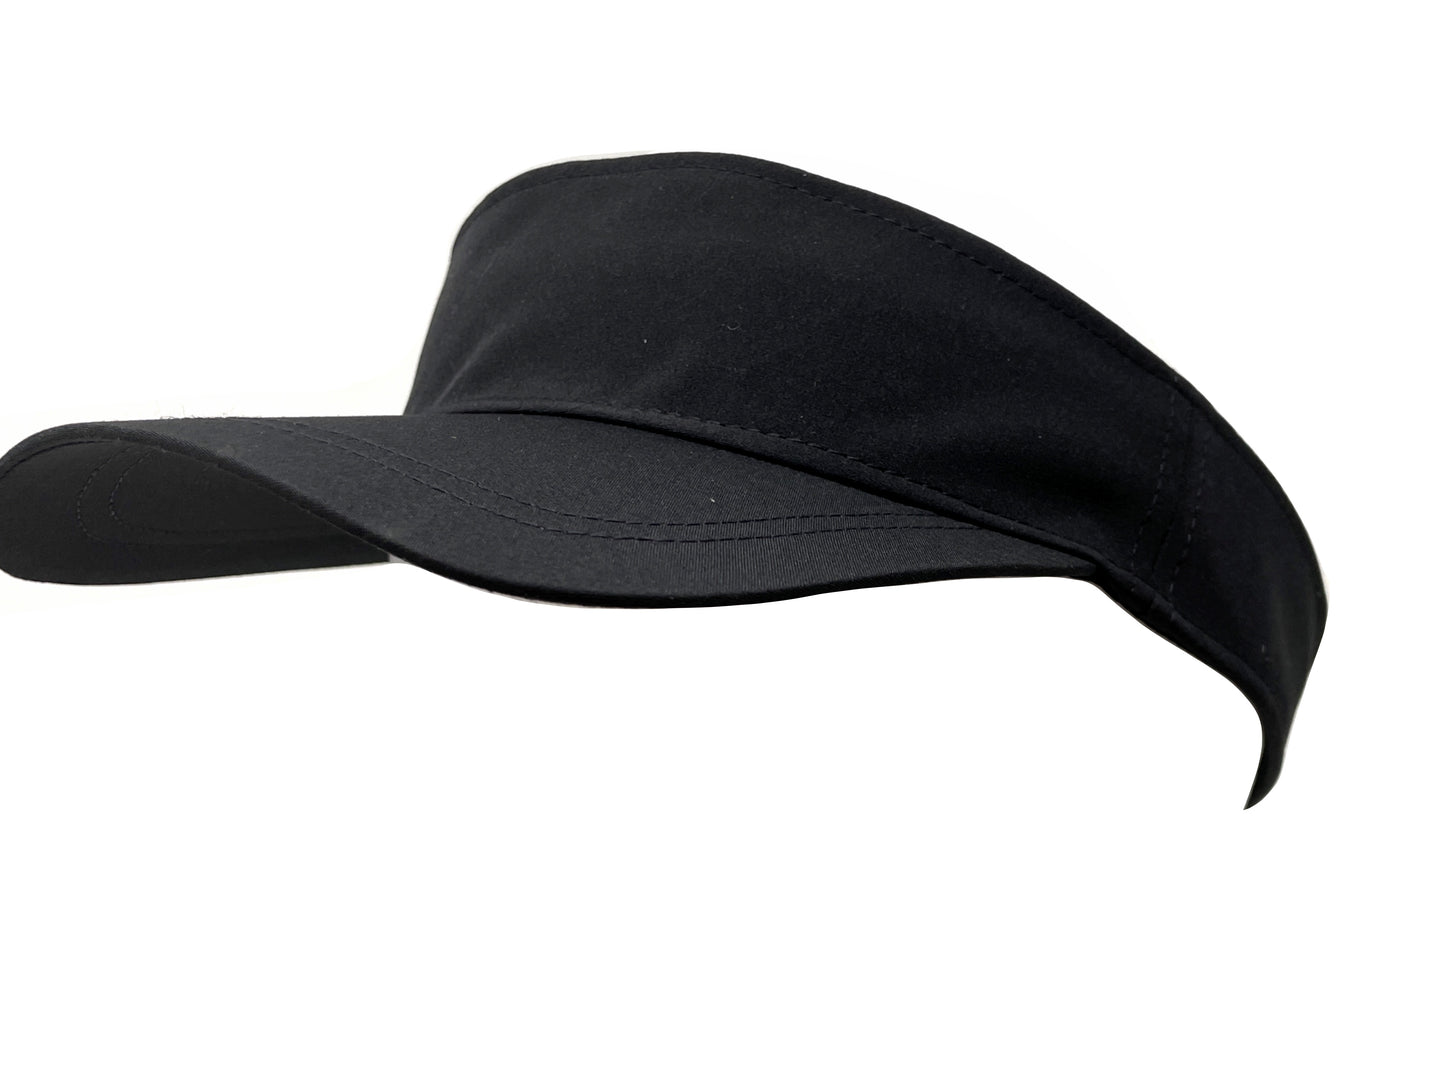 VISOR cap, sports visor